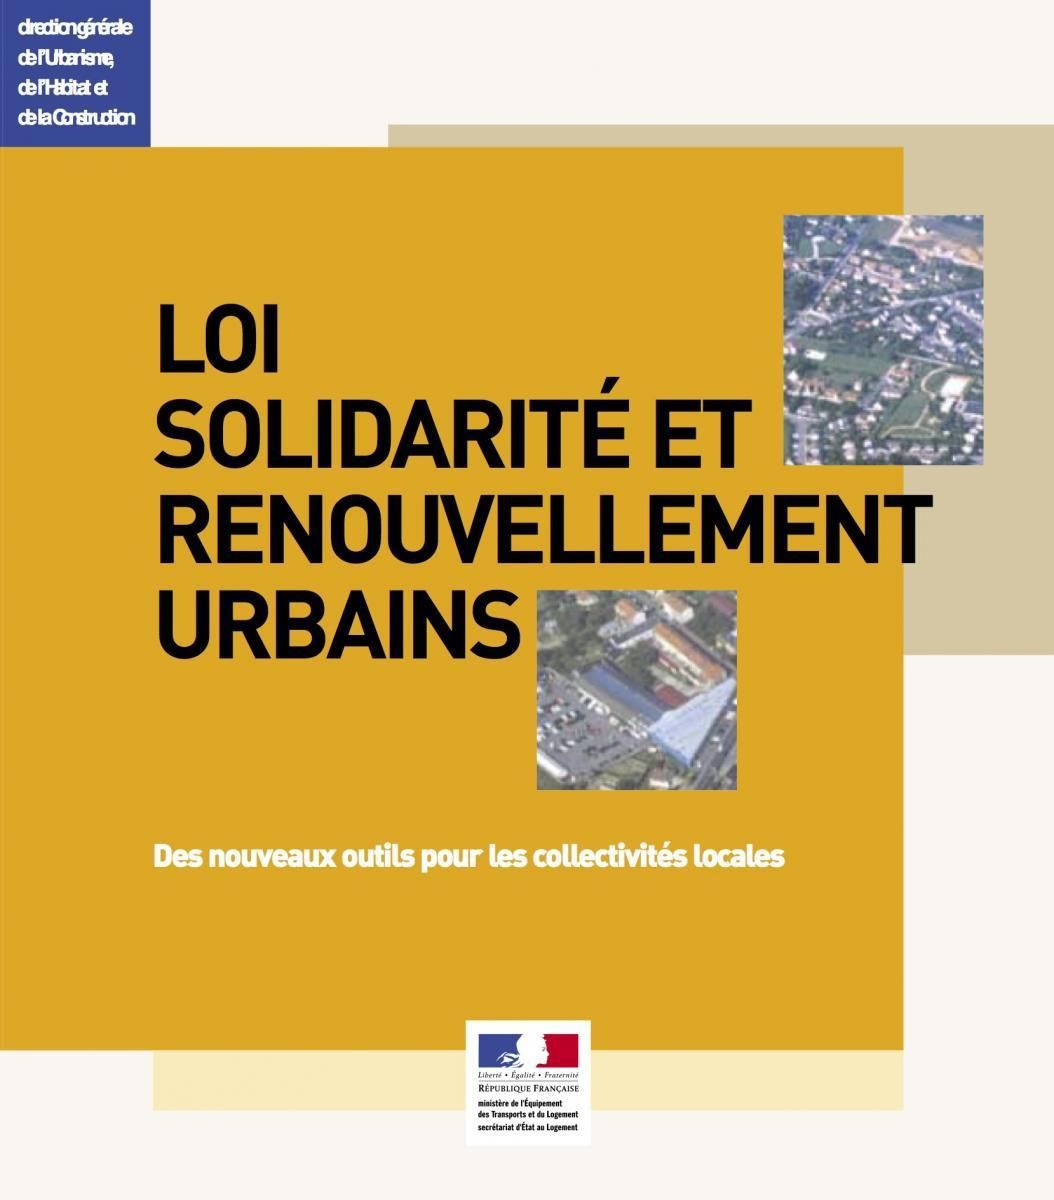 Solidarité-et-Renouvellement-Urbains-SRU